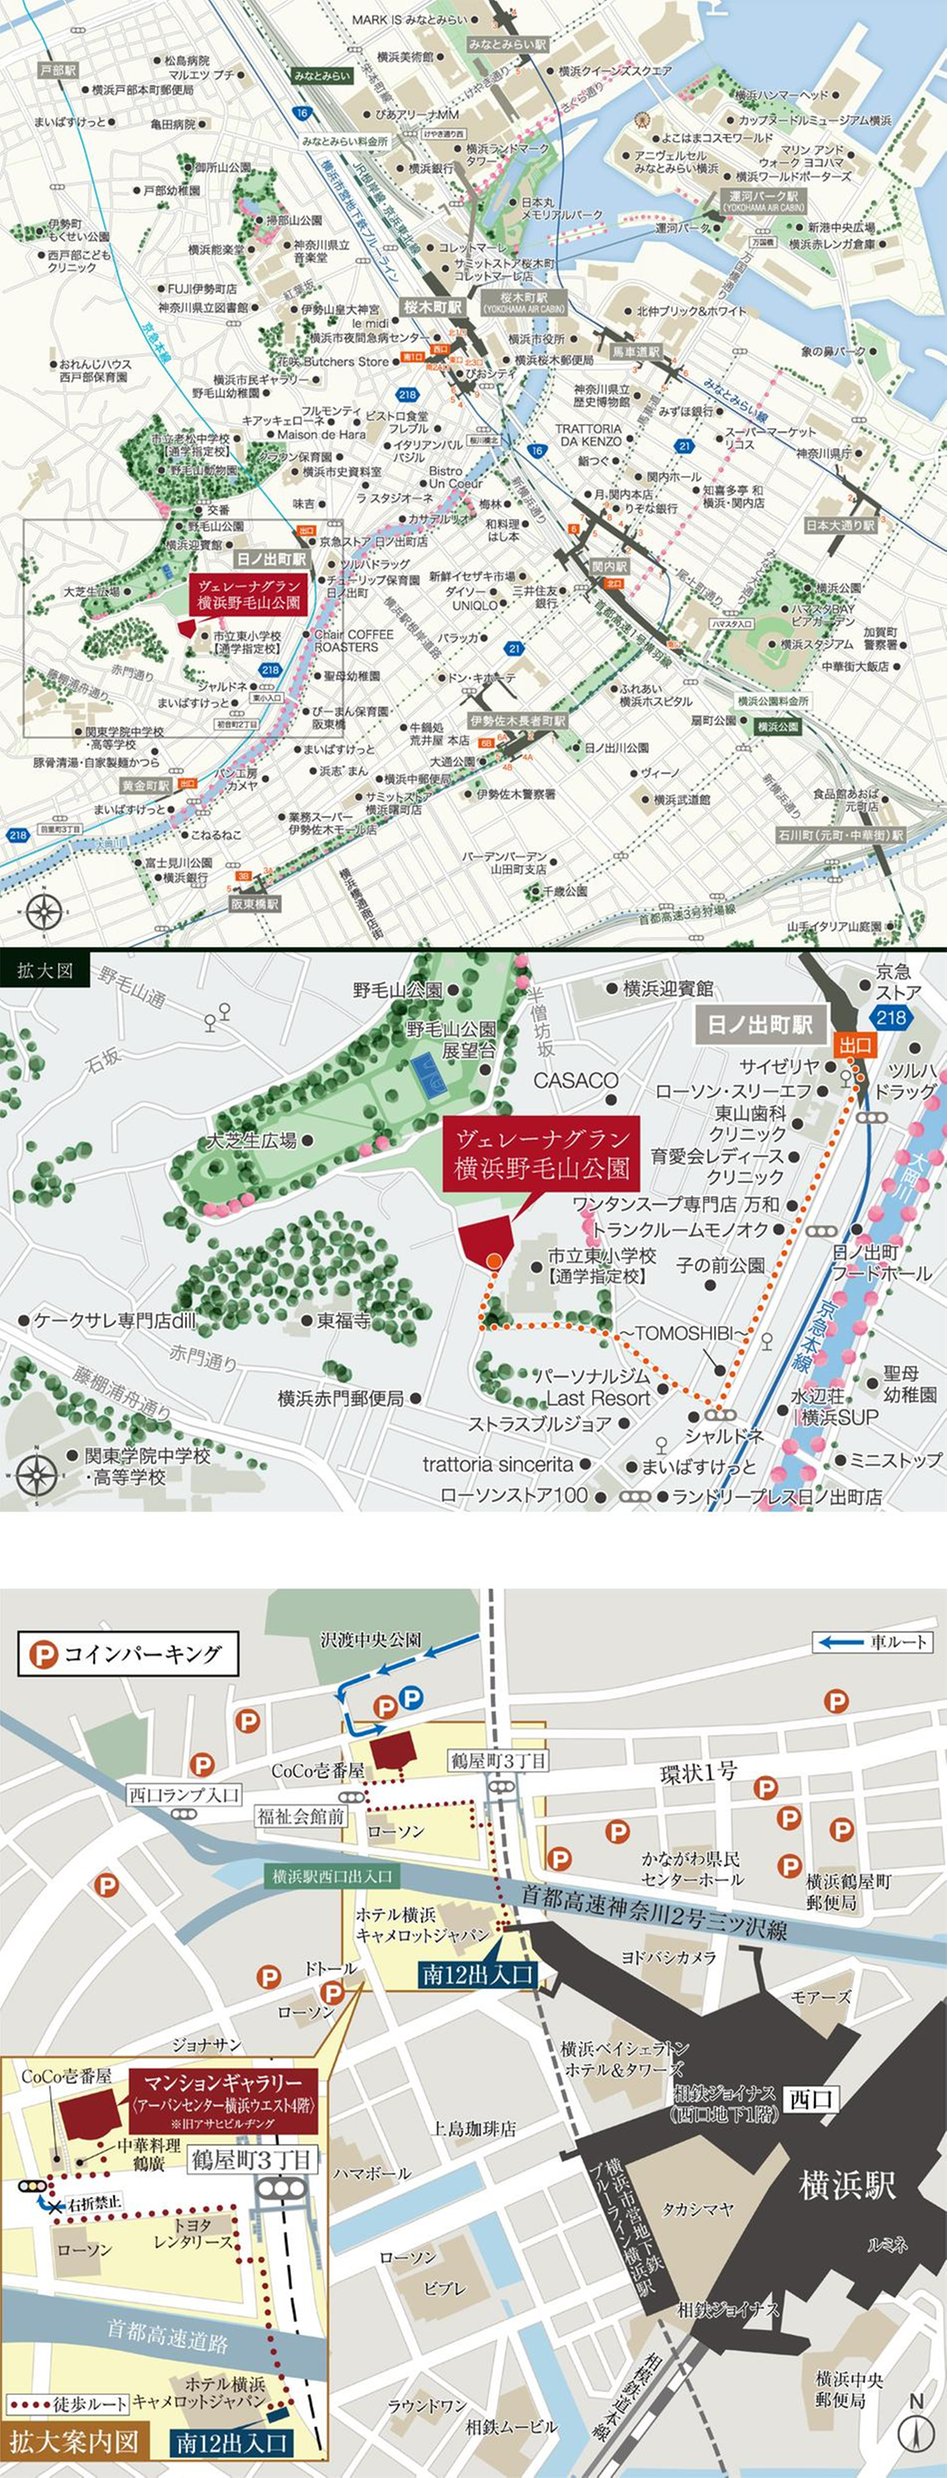 ヴェレーナグラン横浜野毛山公園の現地案内図